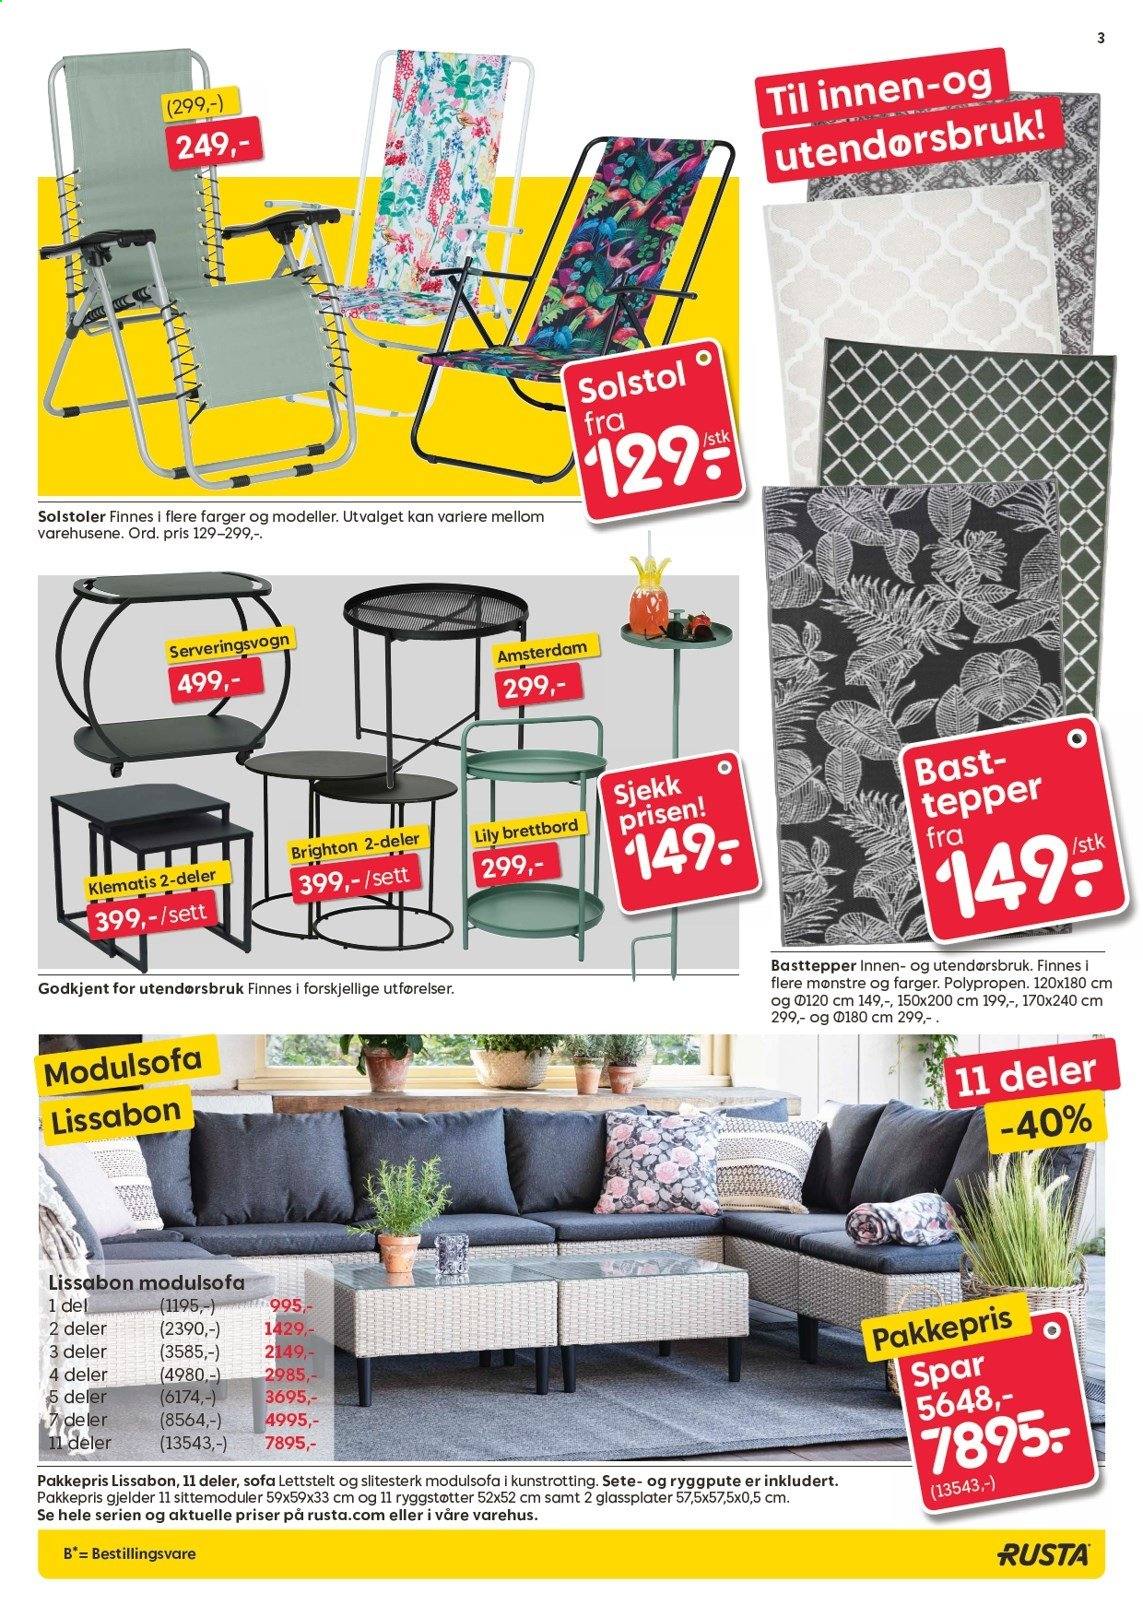 thumbnail - Kundeavis Rusta - 10.5.2021 - 18.5.2021 - Produkter fra tilbudsaviser - bord, brettbord, sofa, teppe. Side 3.